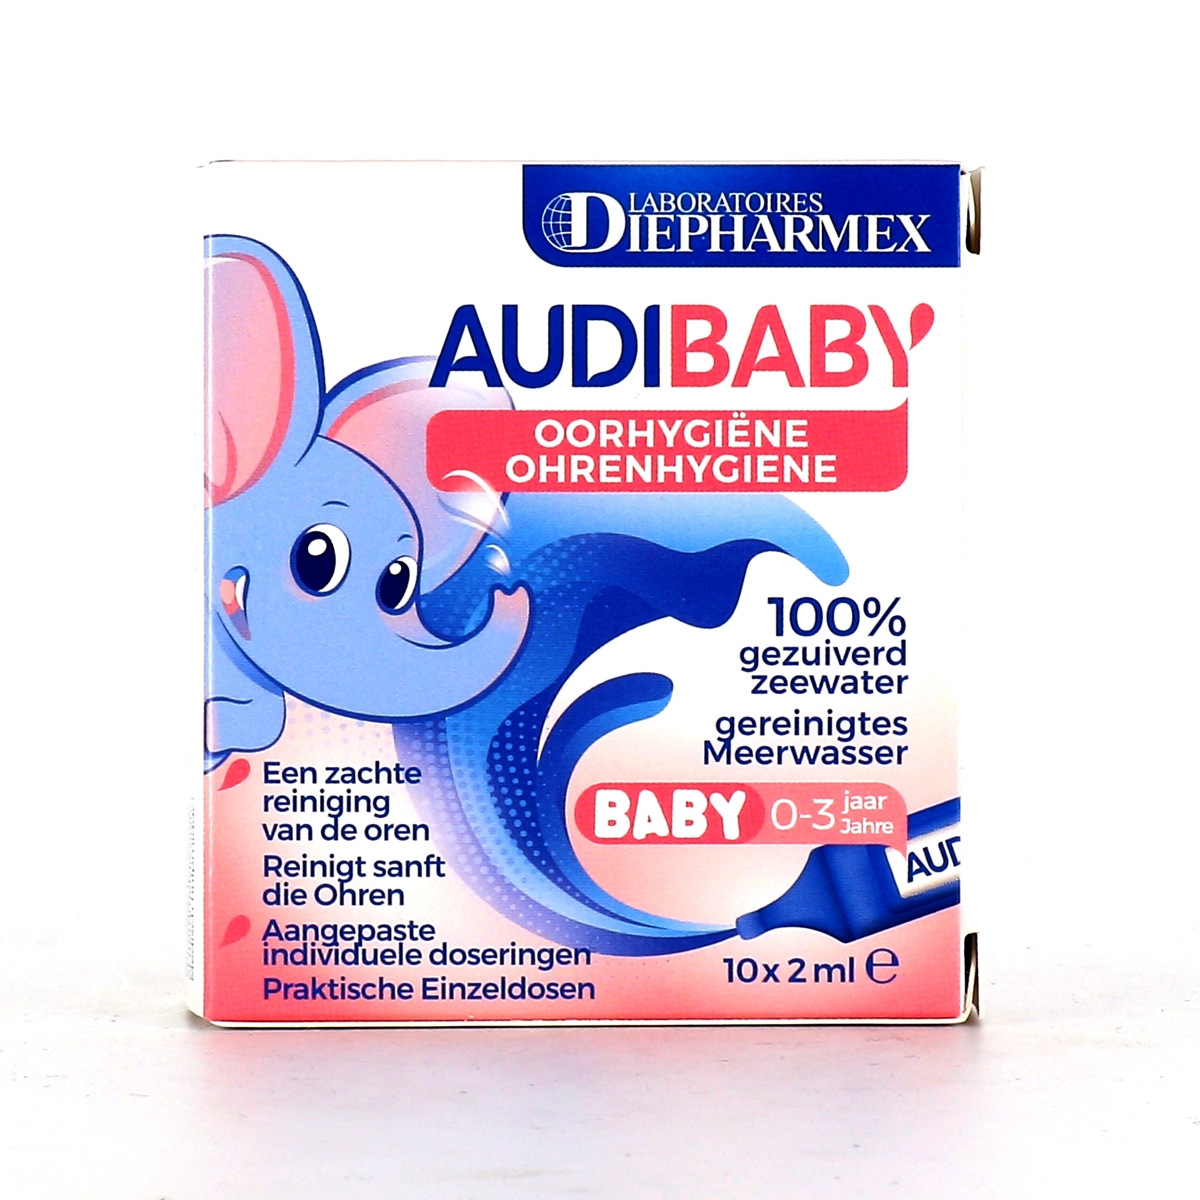 audispray Audibaby  pour l'hygiene de l'oreille de bébé